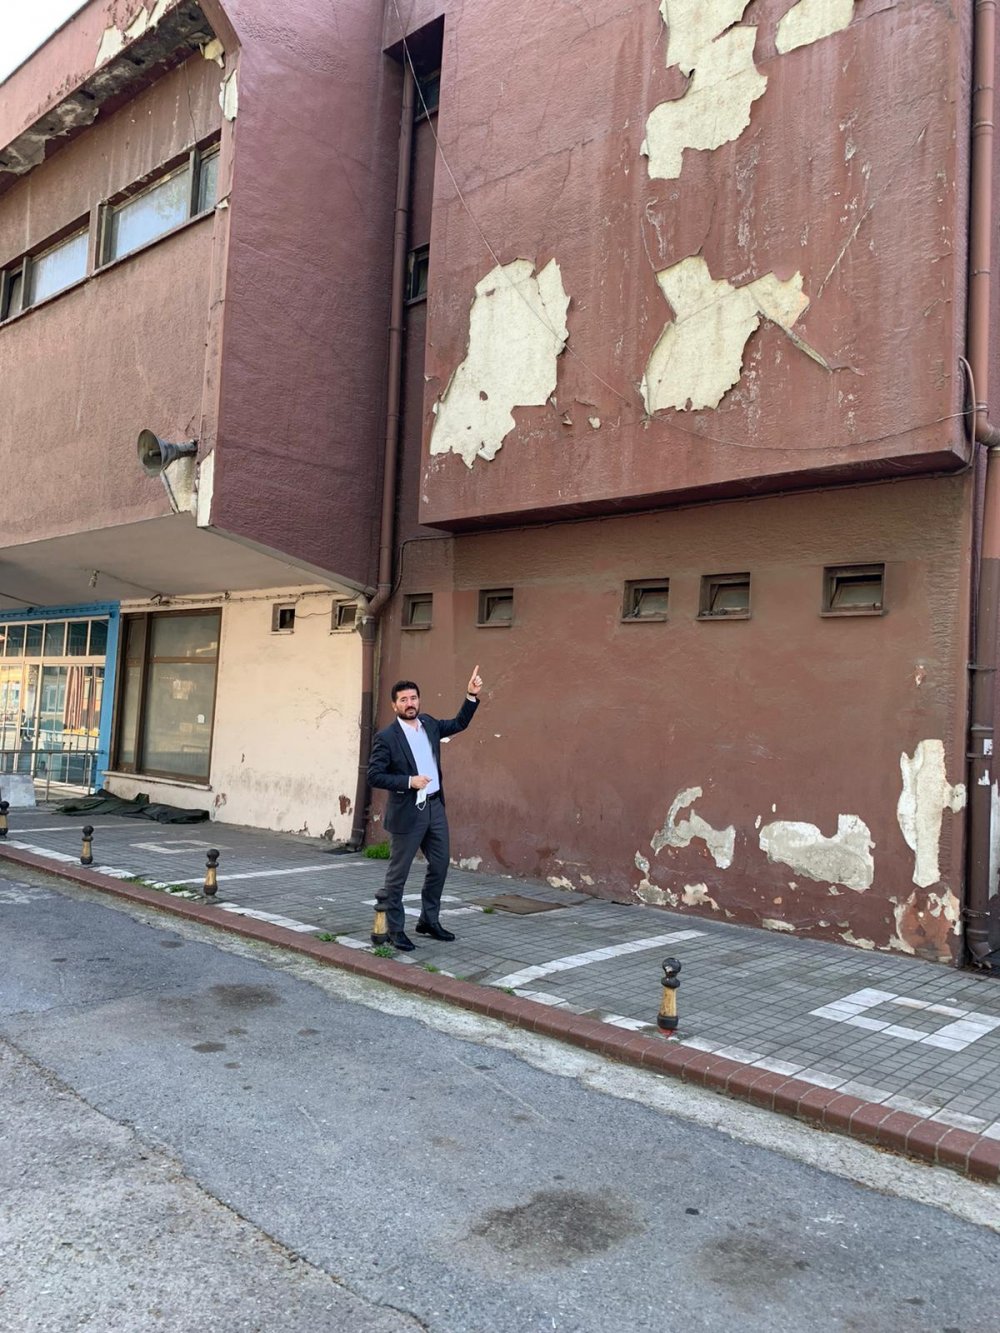 CHP’li Ahmet Kaya: “Metruk haldeki terminal binası Trabzon’a hiç yakışmıyor”